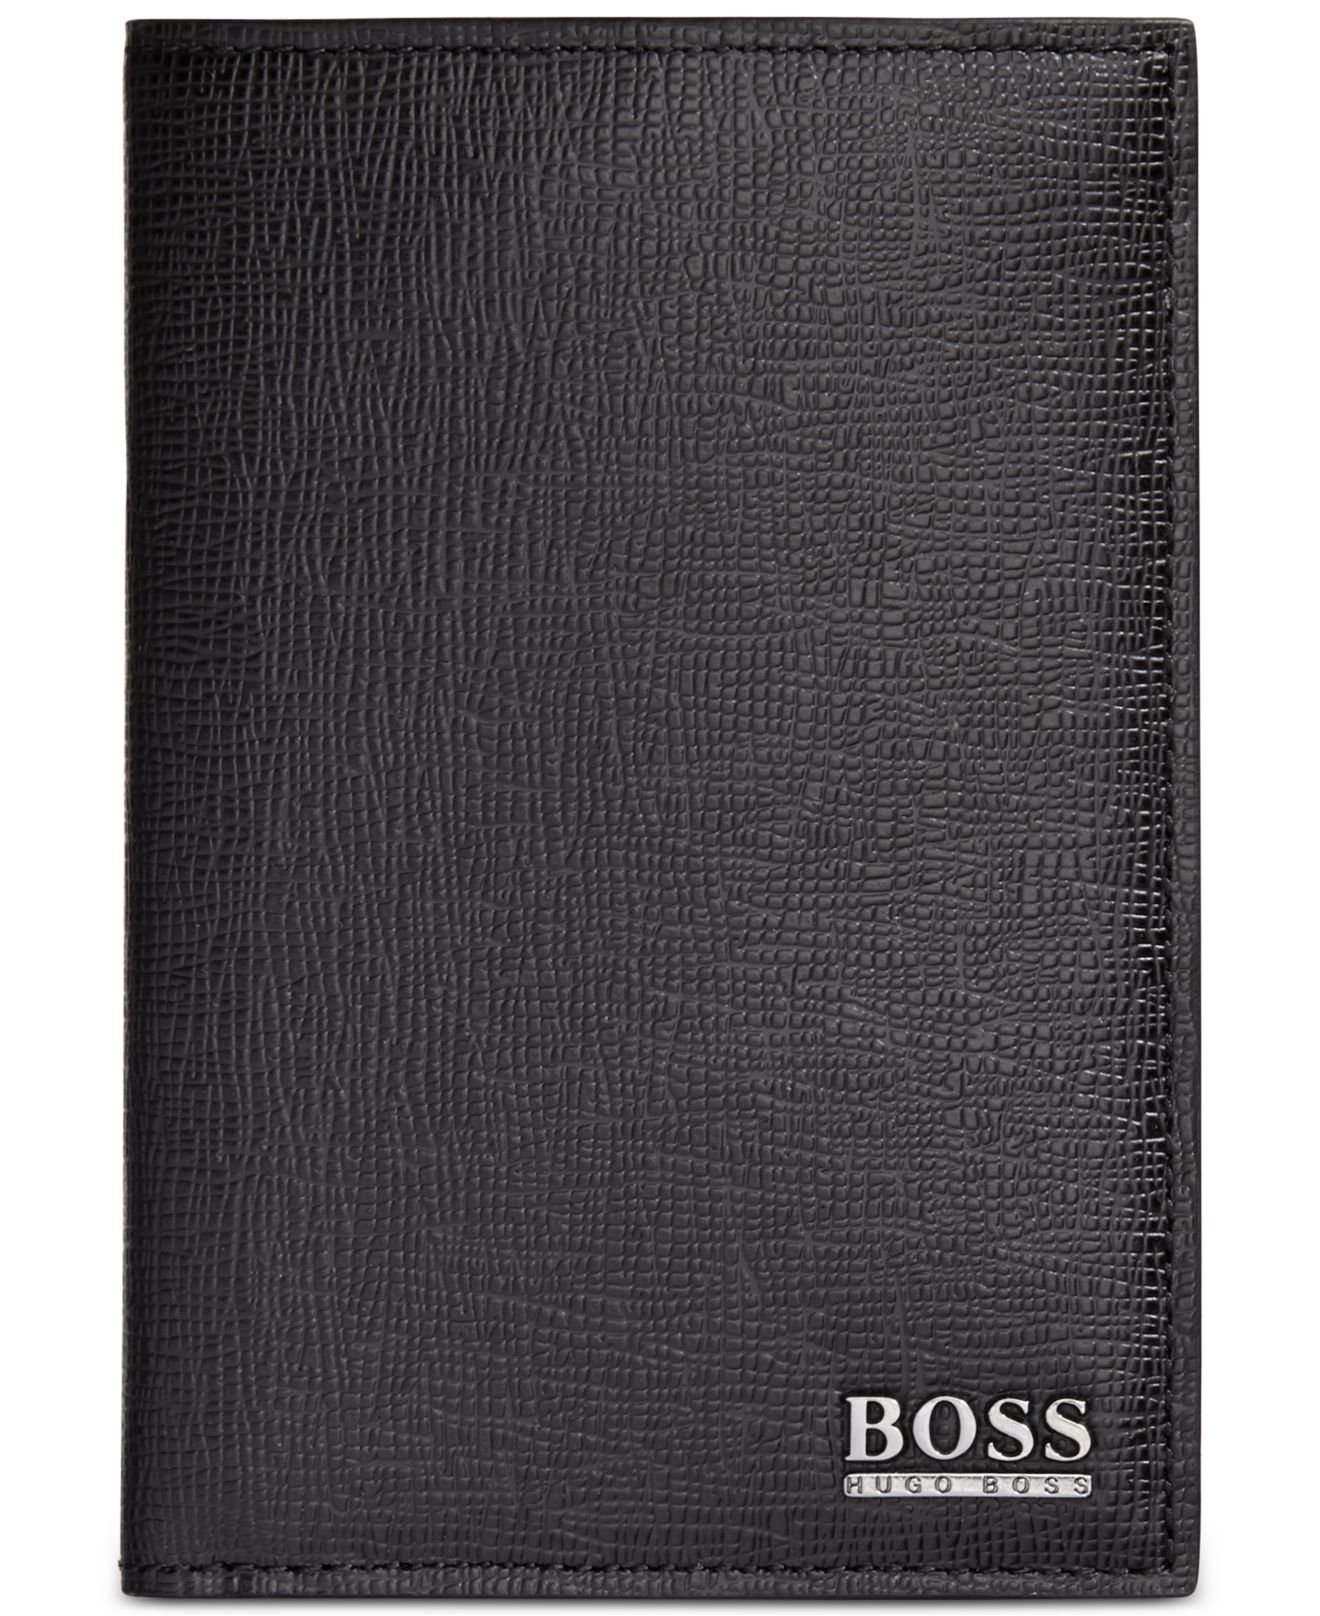 BOSS by Hugo Boss Passport Holder in 